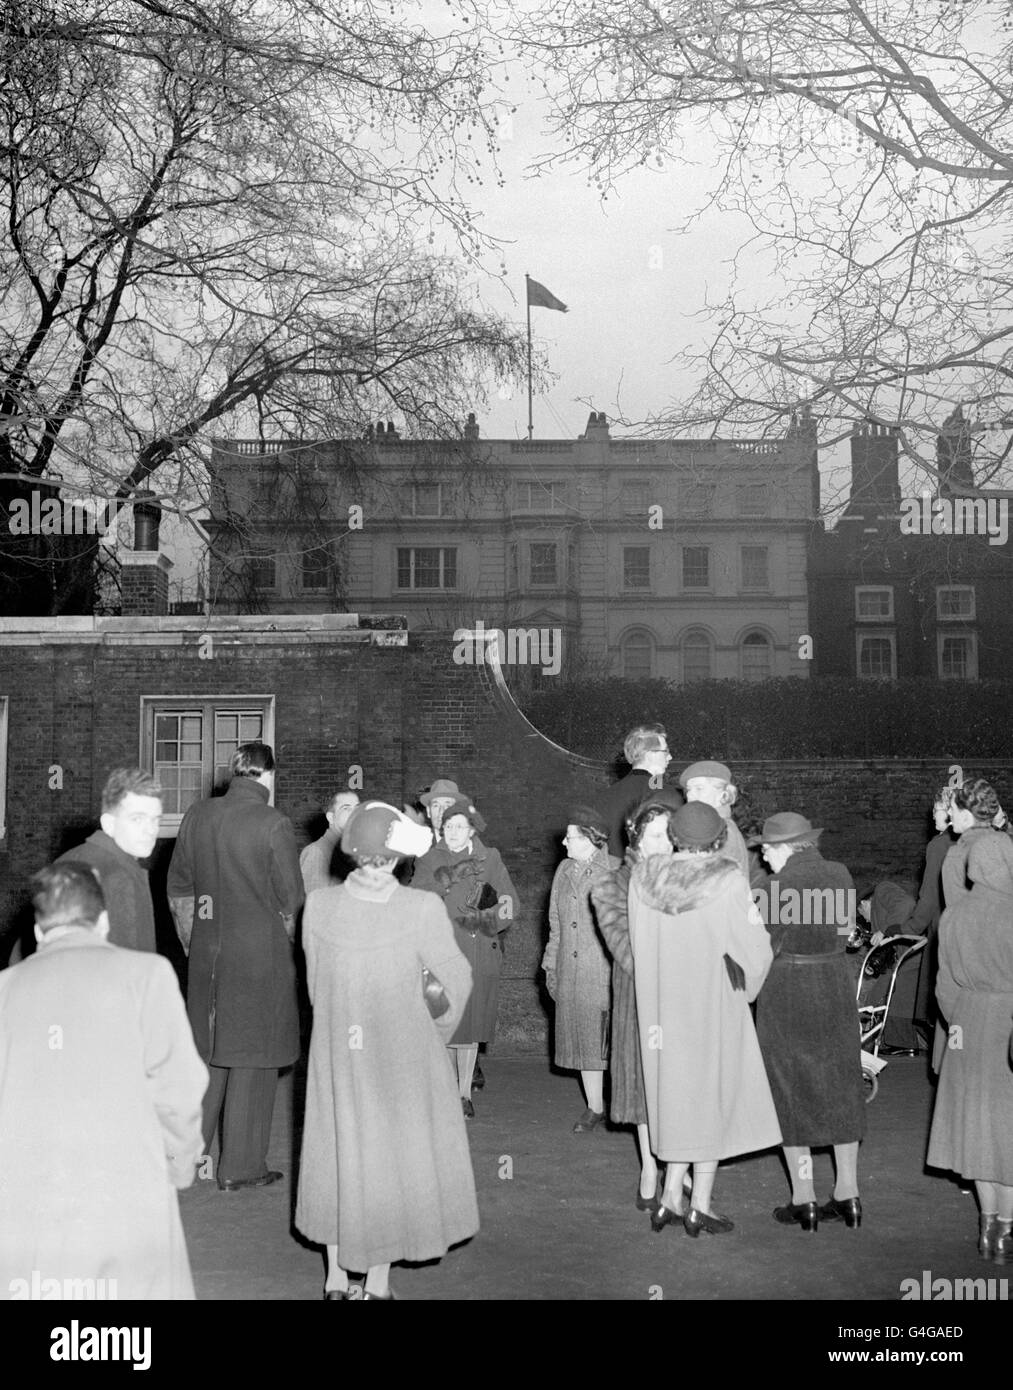 Les Londoniens regardent le Standard du souverain se flairer sur Clarence House pour la première fois après le retour si la nouvelle reine Elizabeth II et son mari, le duc d'Édimbourg. Le couple royal venait de rentrer du Kenya après la mort du roi George VI Banque D'Images